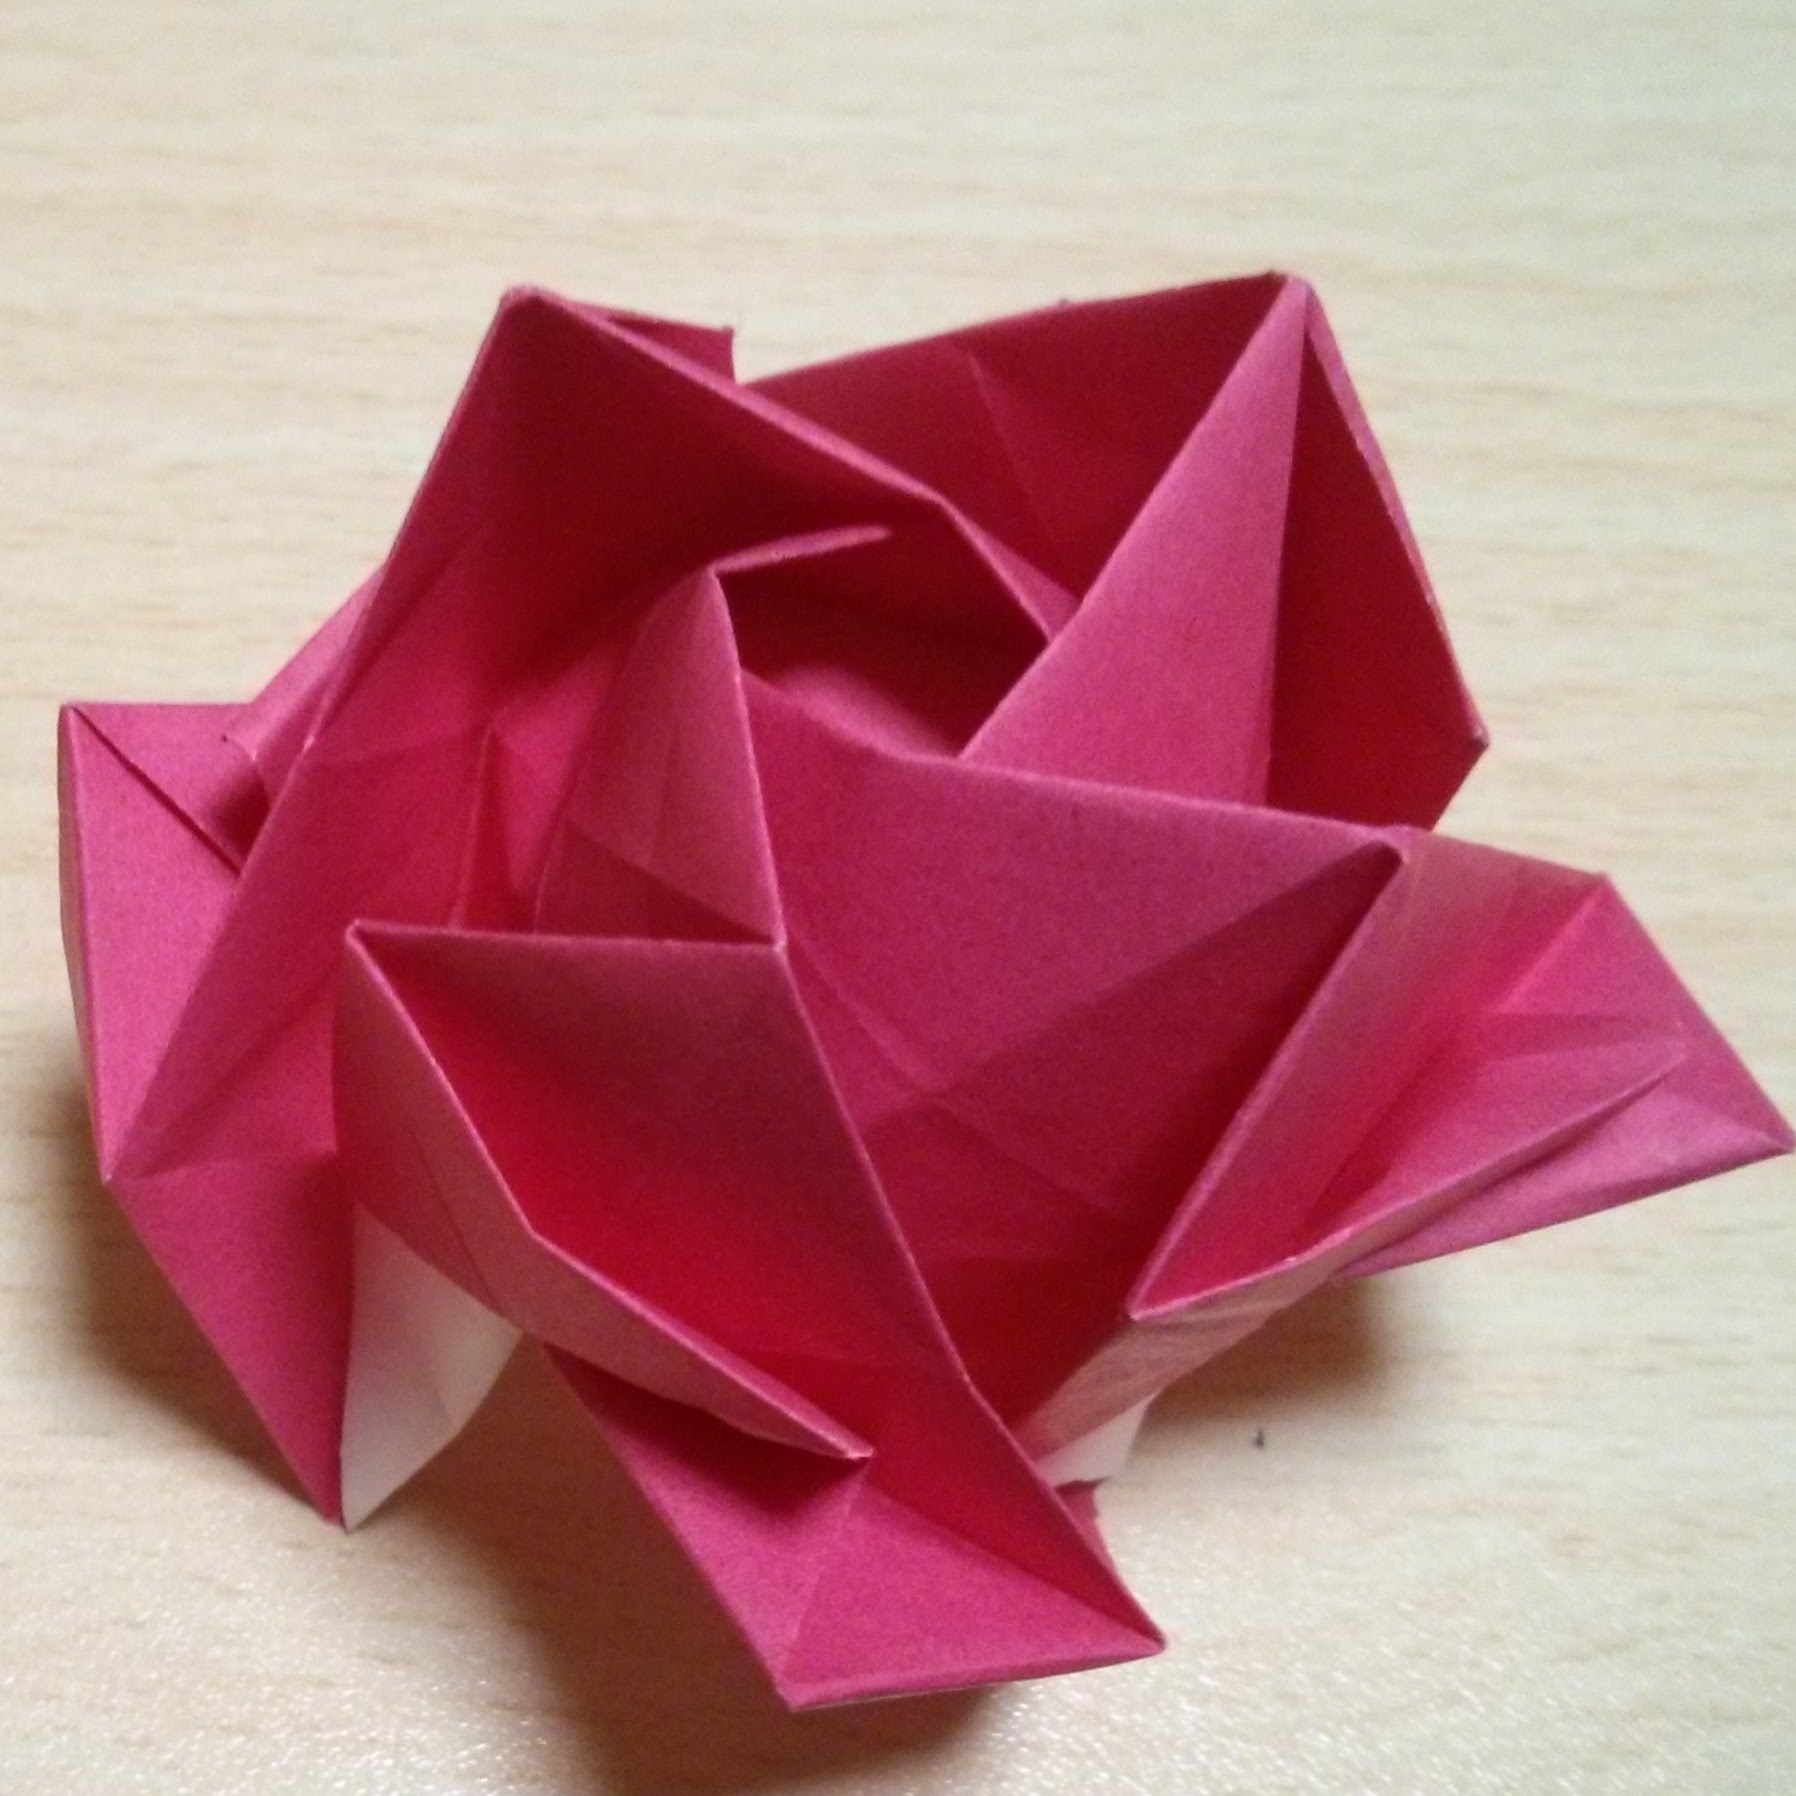 折り紙で作る立体 平面のお花9選 簡単初心者向け 難しい中級者向けまで 暮らし の